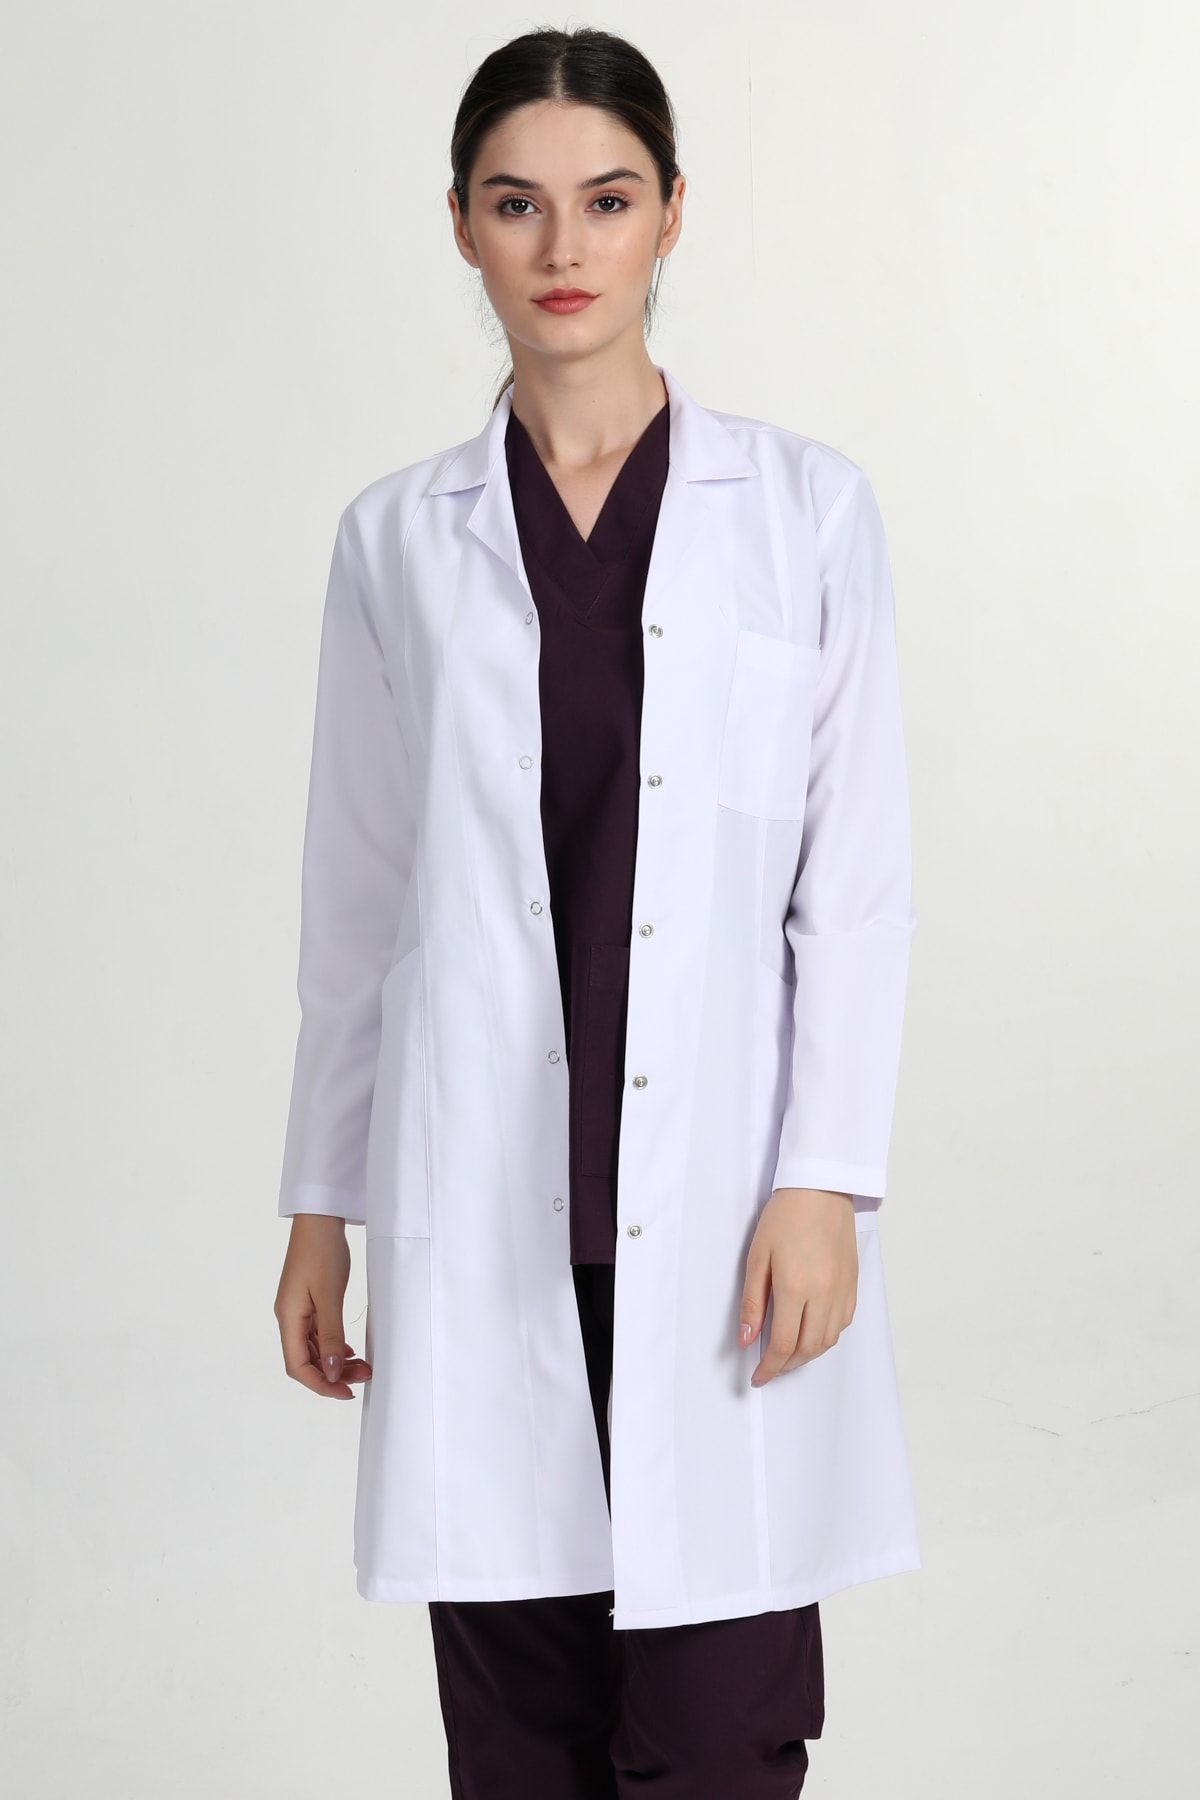 BAŞAK Beyaz Gömlek Yaka Uzun Doktor Hemşire Öğretmen Önlüğü MRV1401